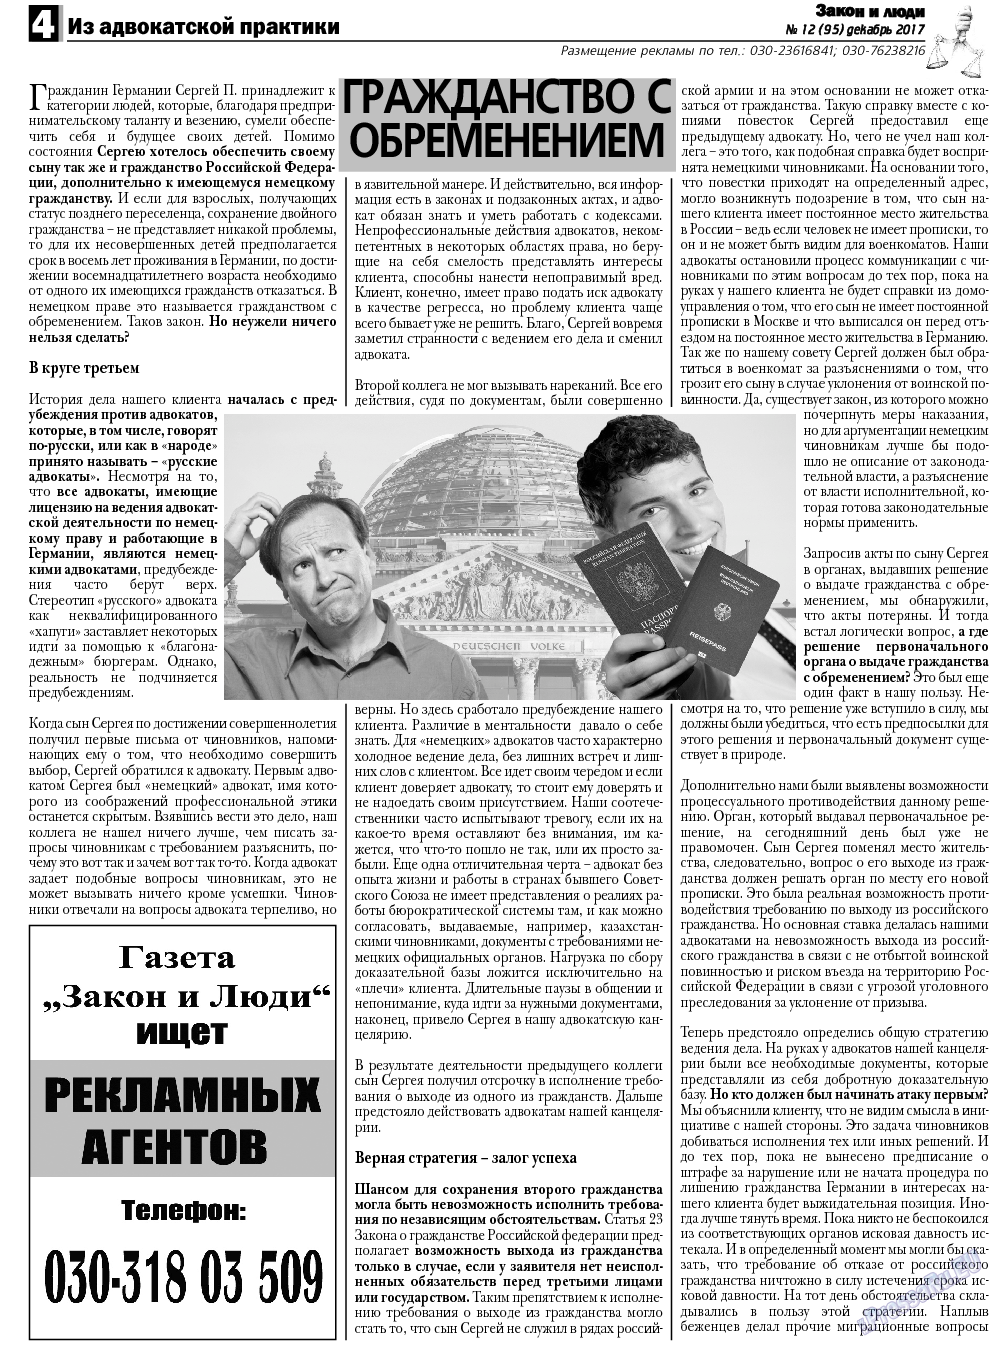 Закон и люди, газета. 2017 №12 стр.4